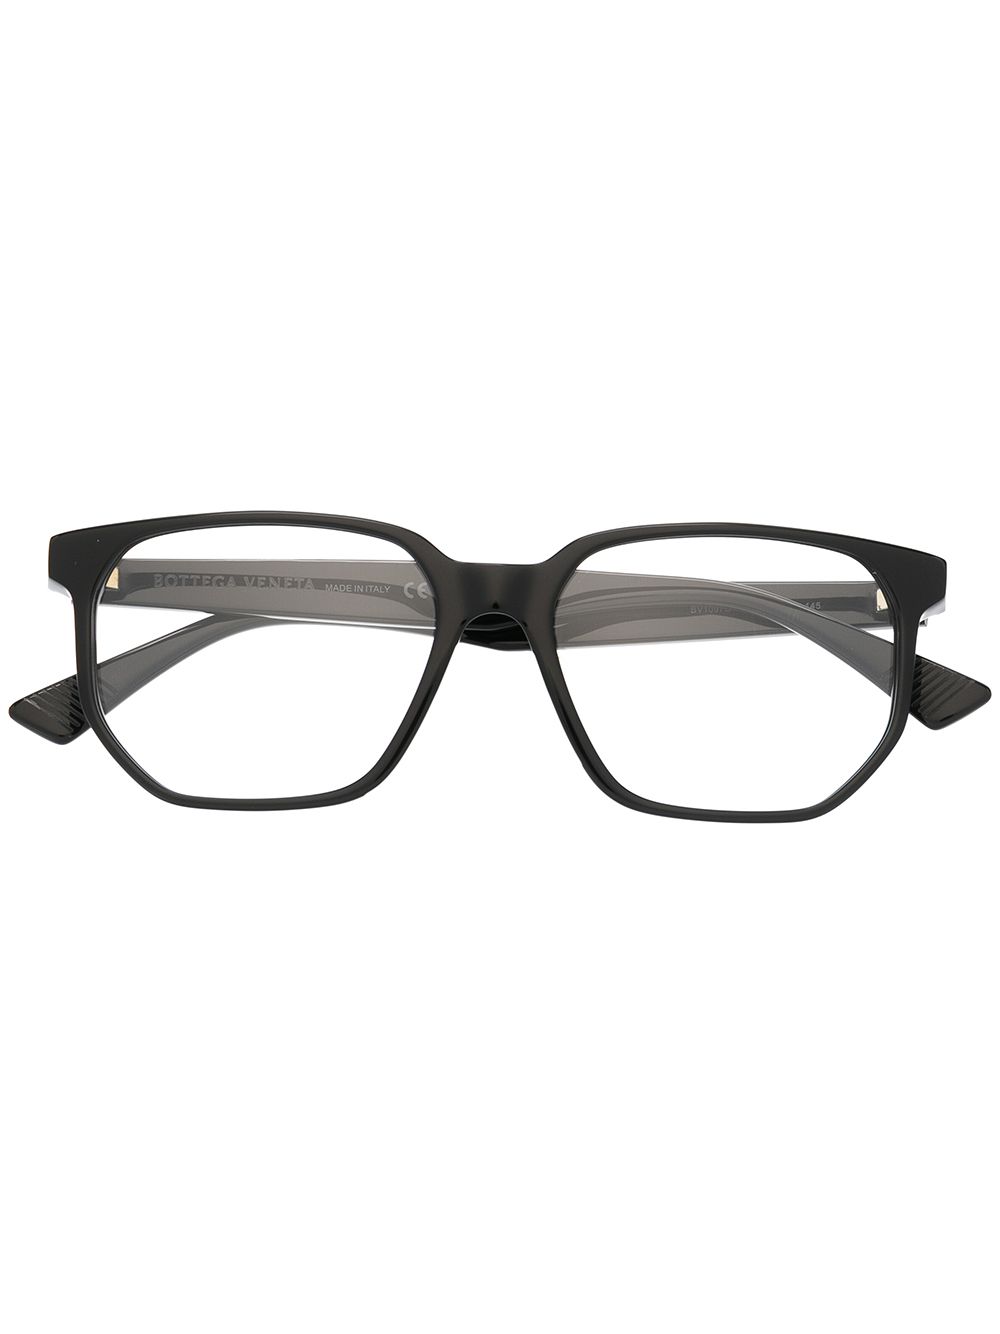 фото Bottega veneta eyewear массивные очки в d-образной оправе